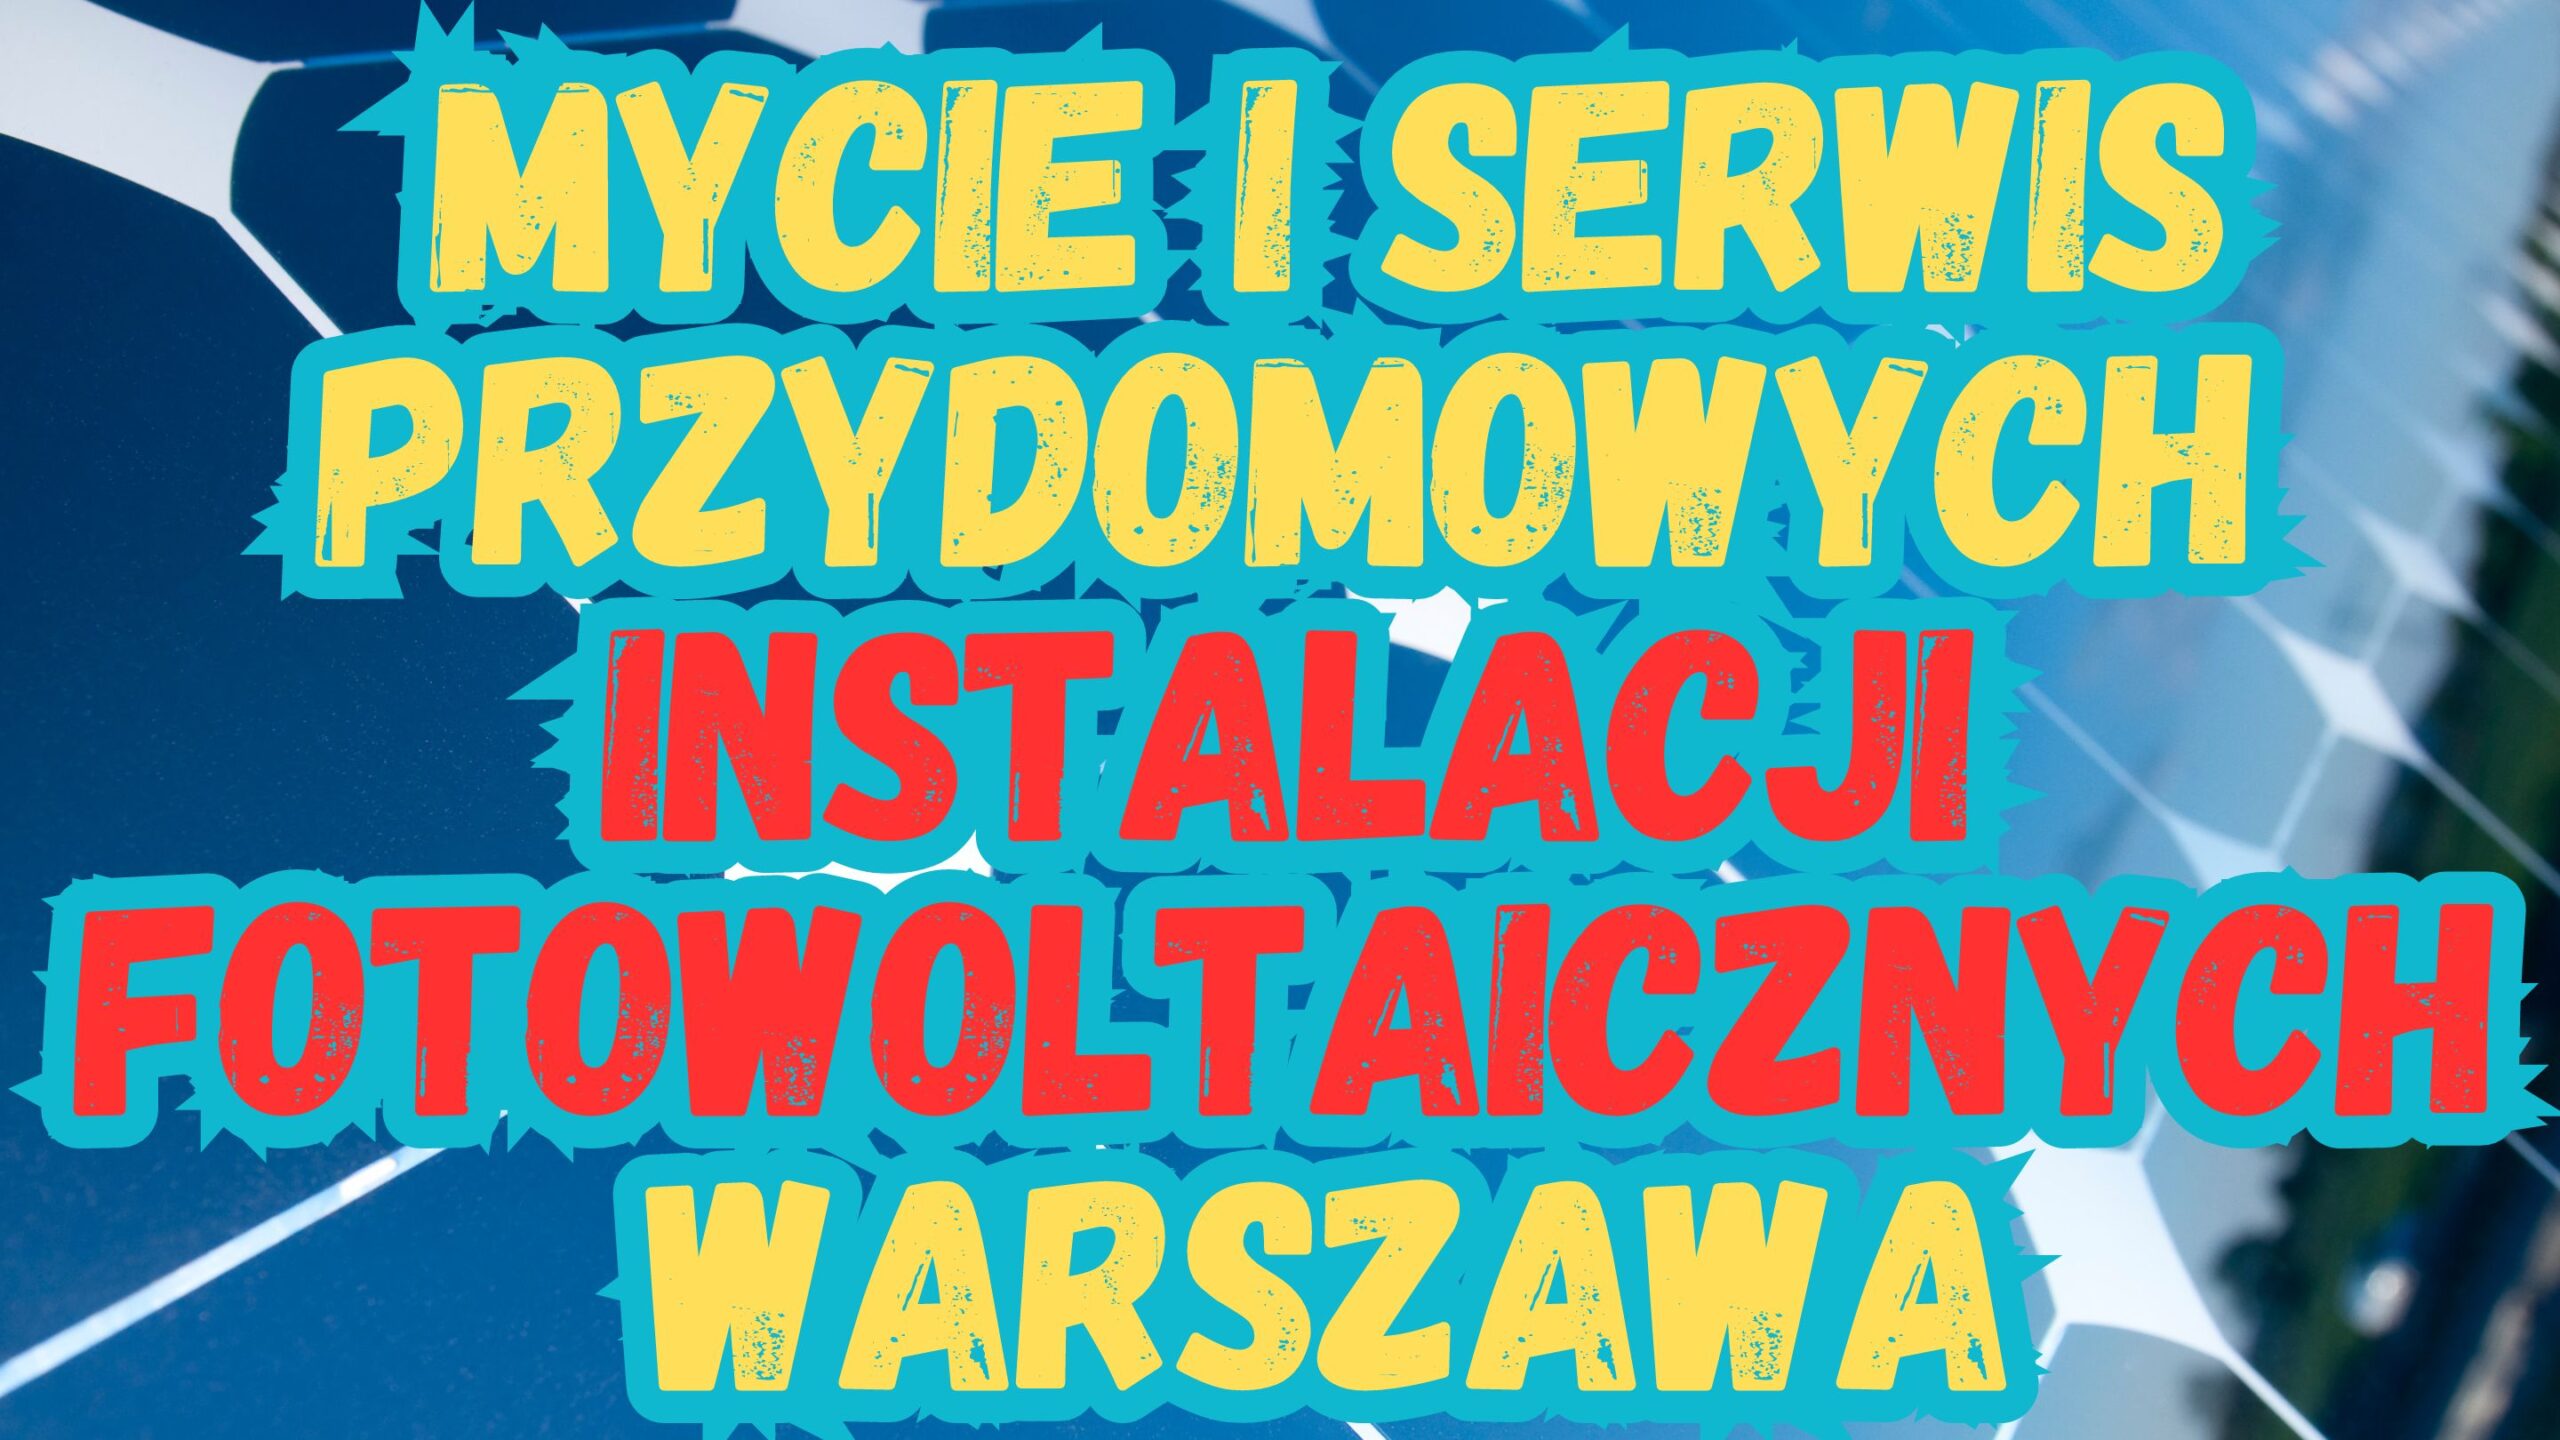 Serwisujemy i myjemy fotowoltaikę Warszawa